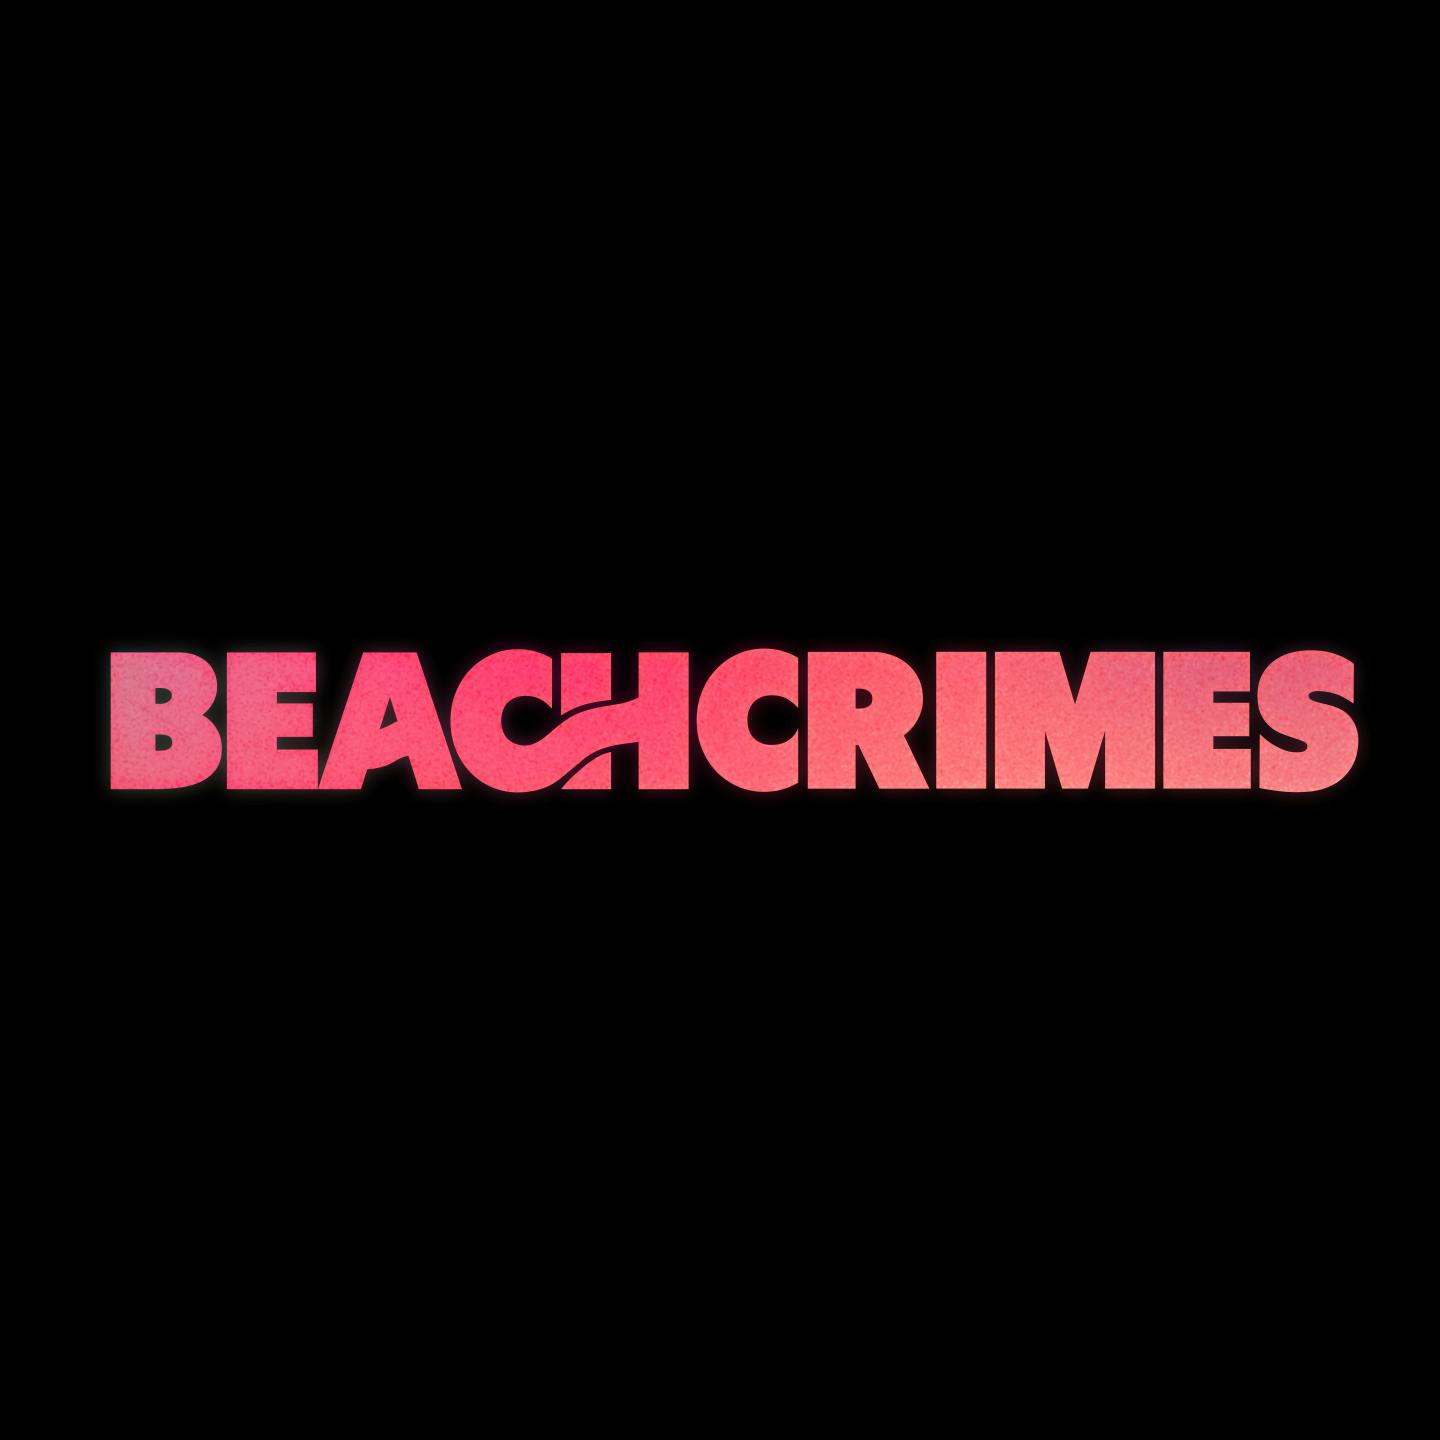 Beachcrimes